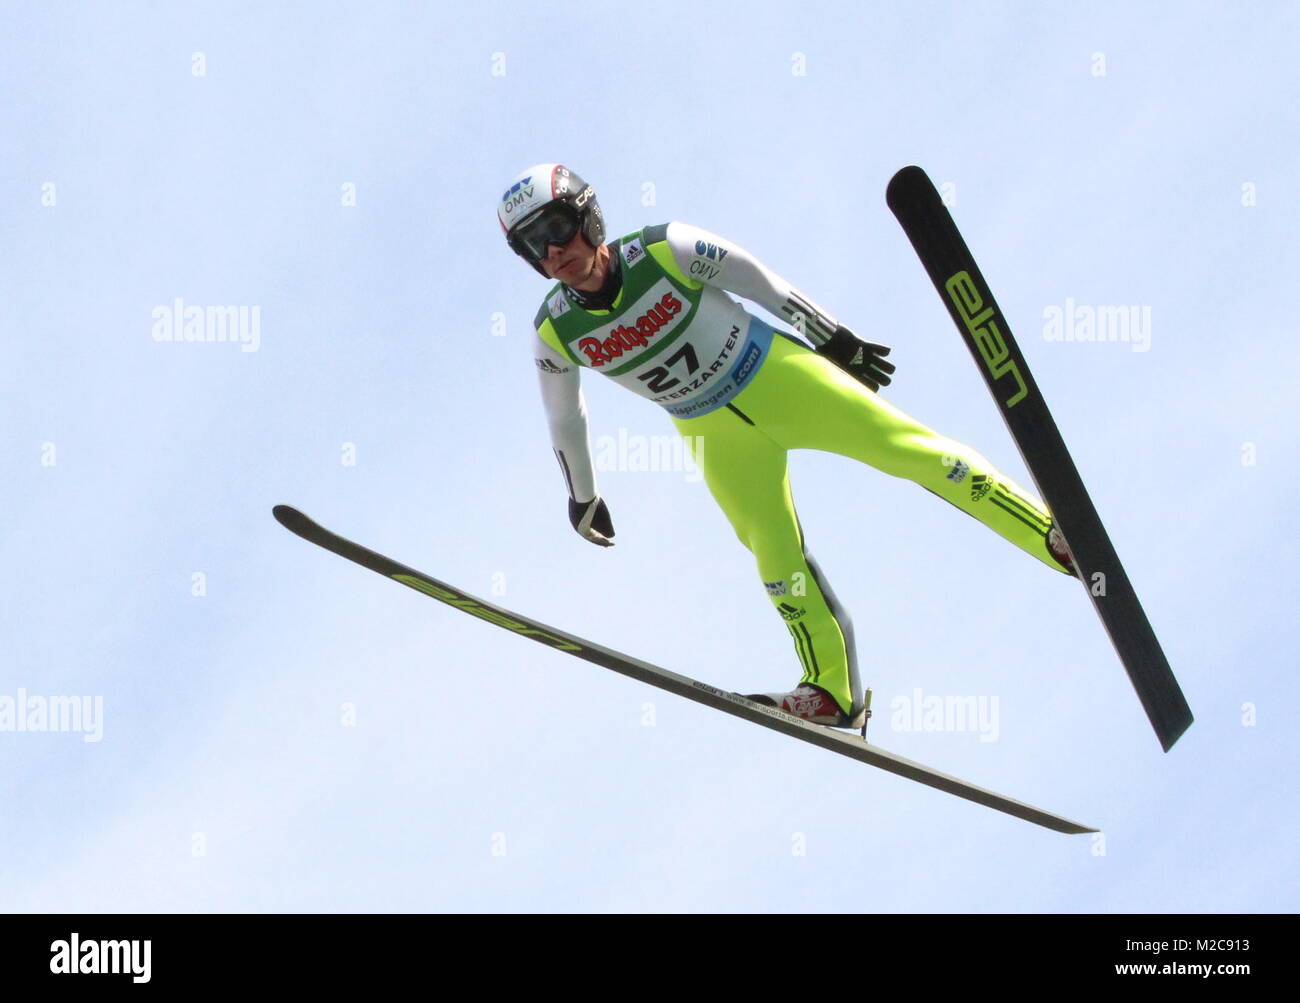 Im Landeanflug: Der Tschech Antonin Hajek - Qualifikation Herren für Einzelwettbewerb beim FIS Sommer GP 2013 in Hinterzarten / Deutschland / Germany Stock Photo